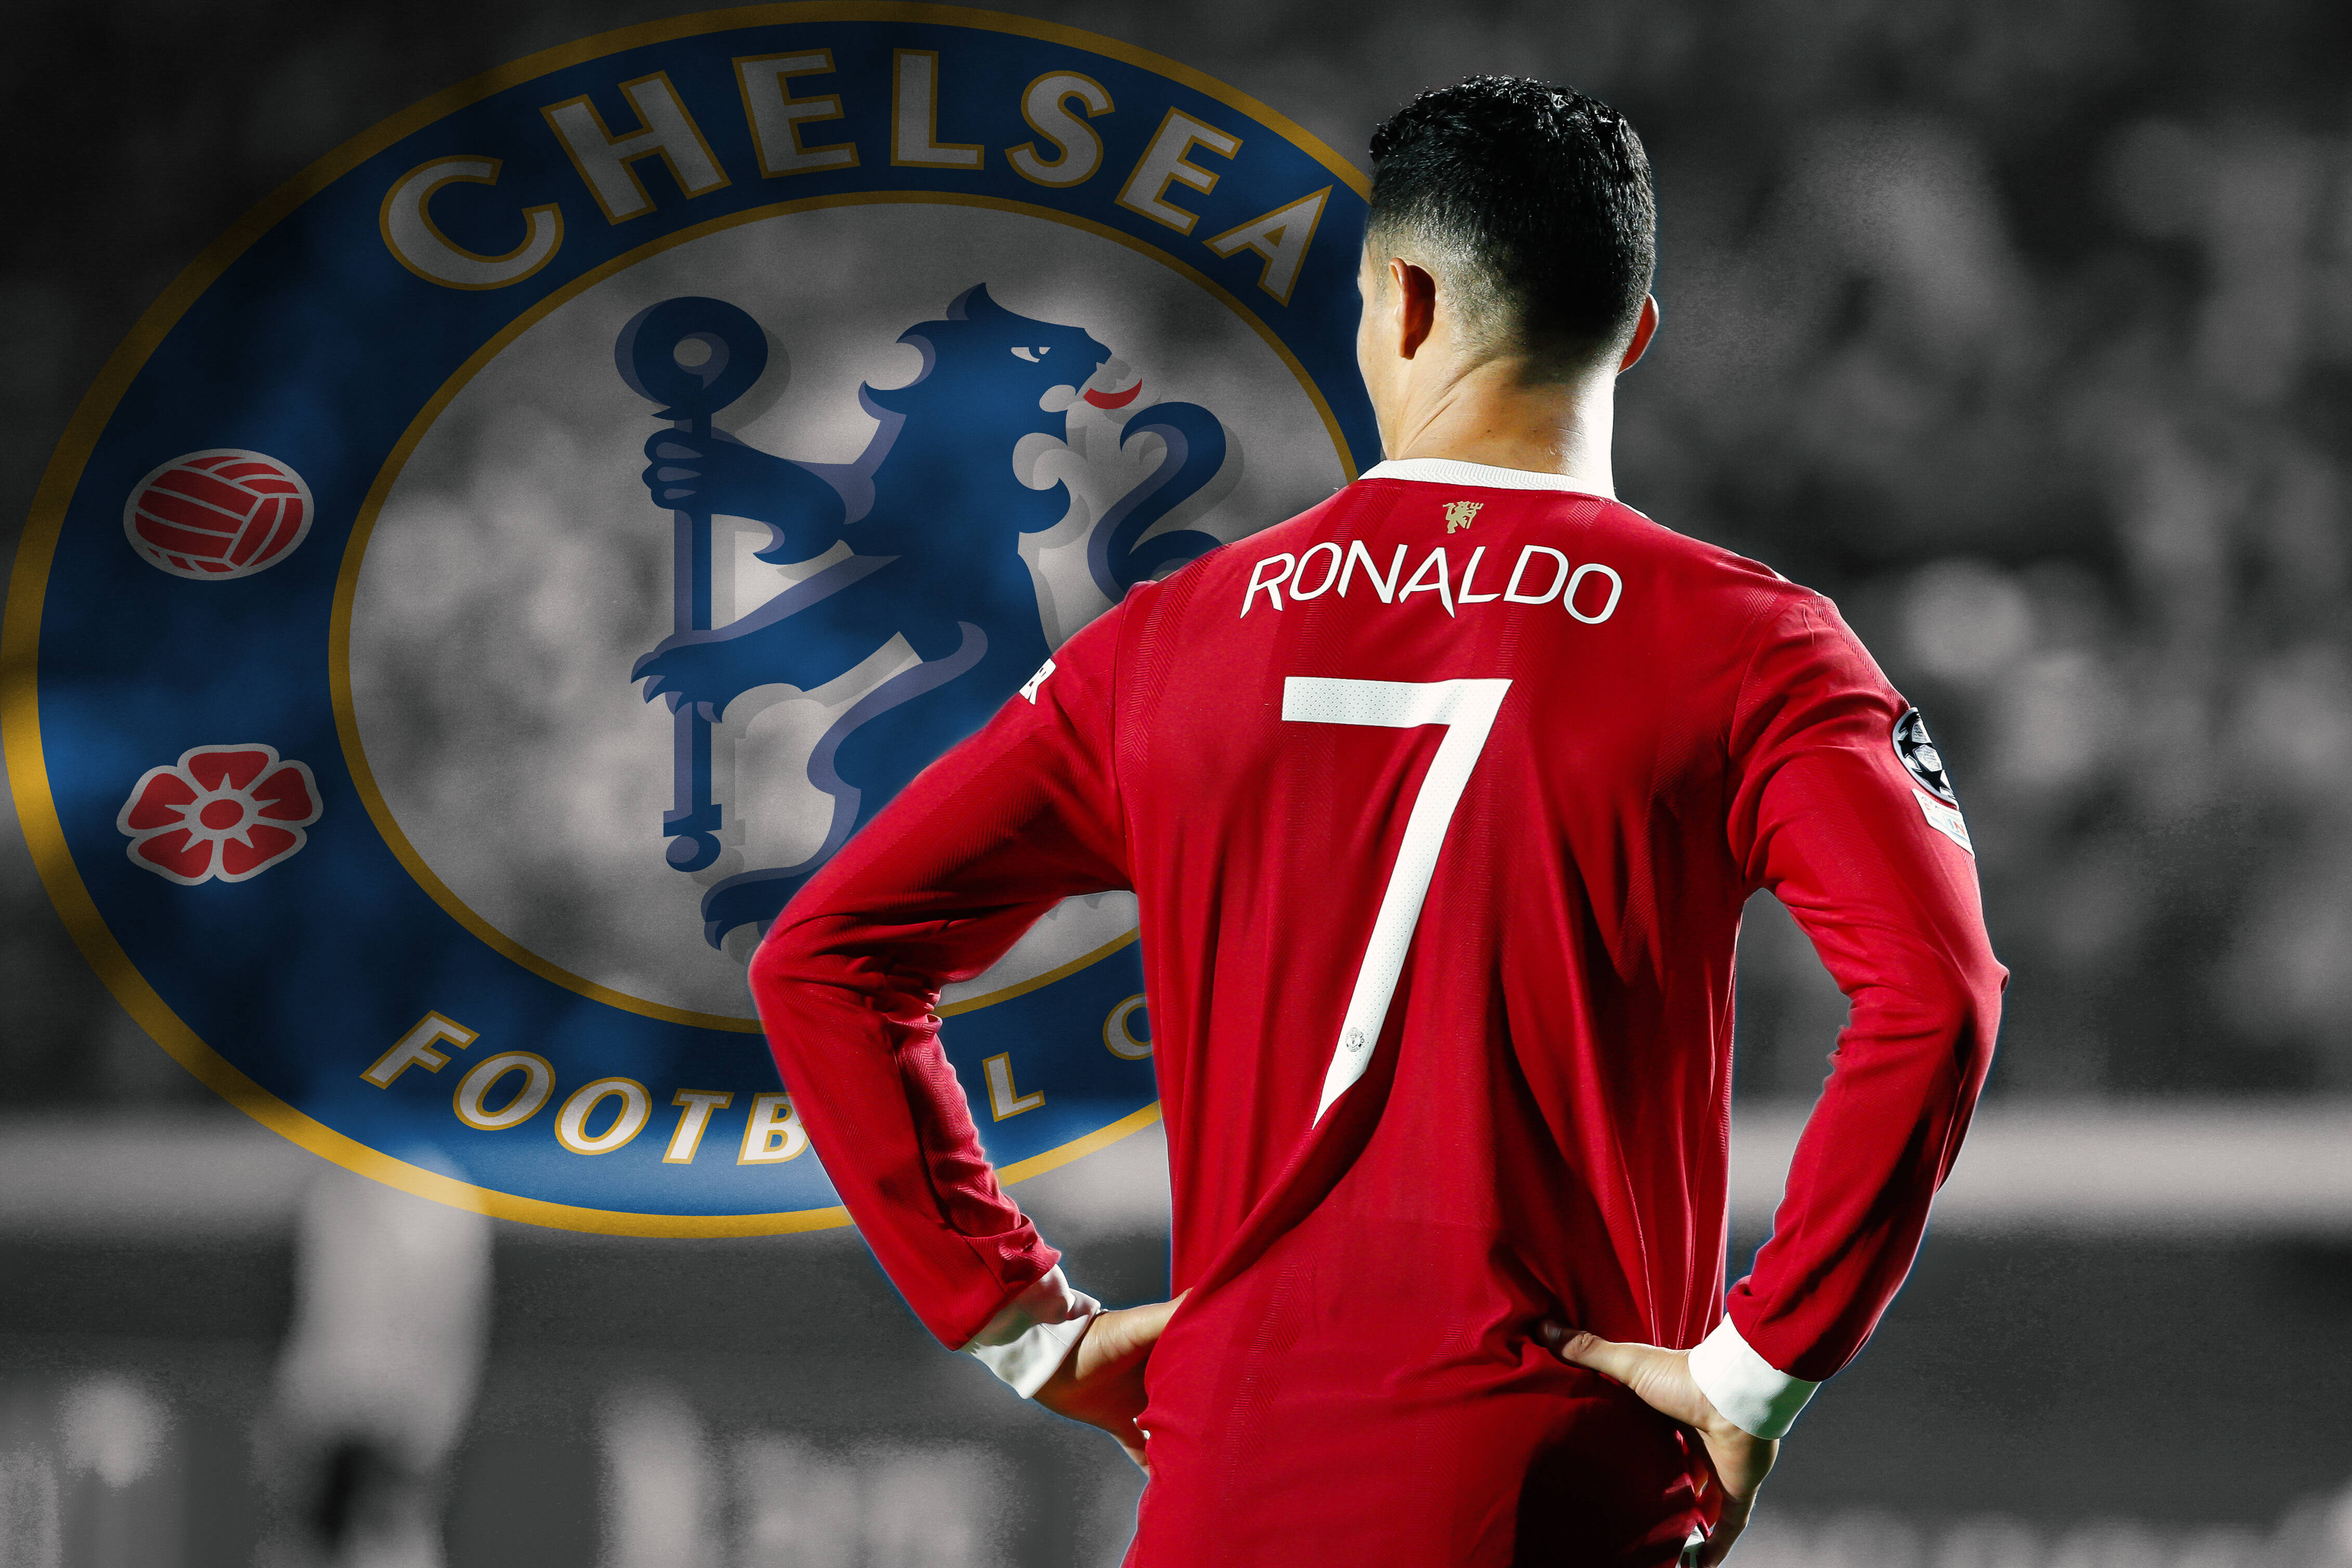 Chelsea interested in Cristiano Ronaldo 